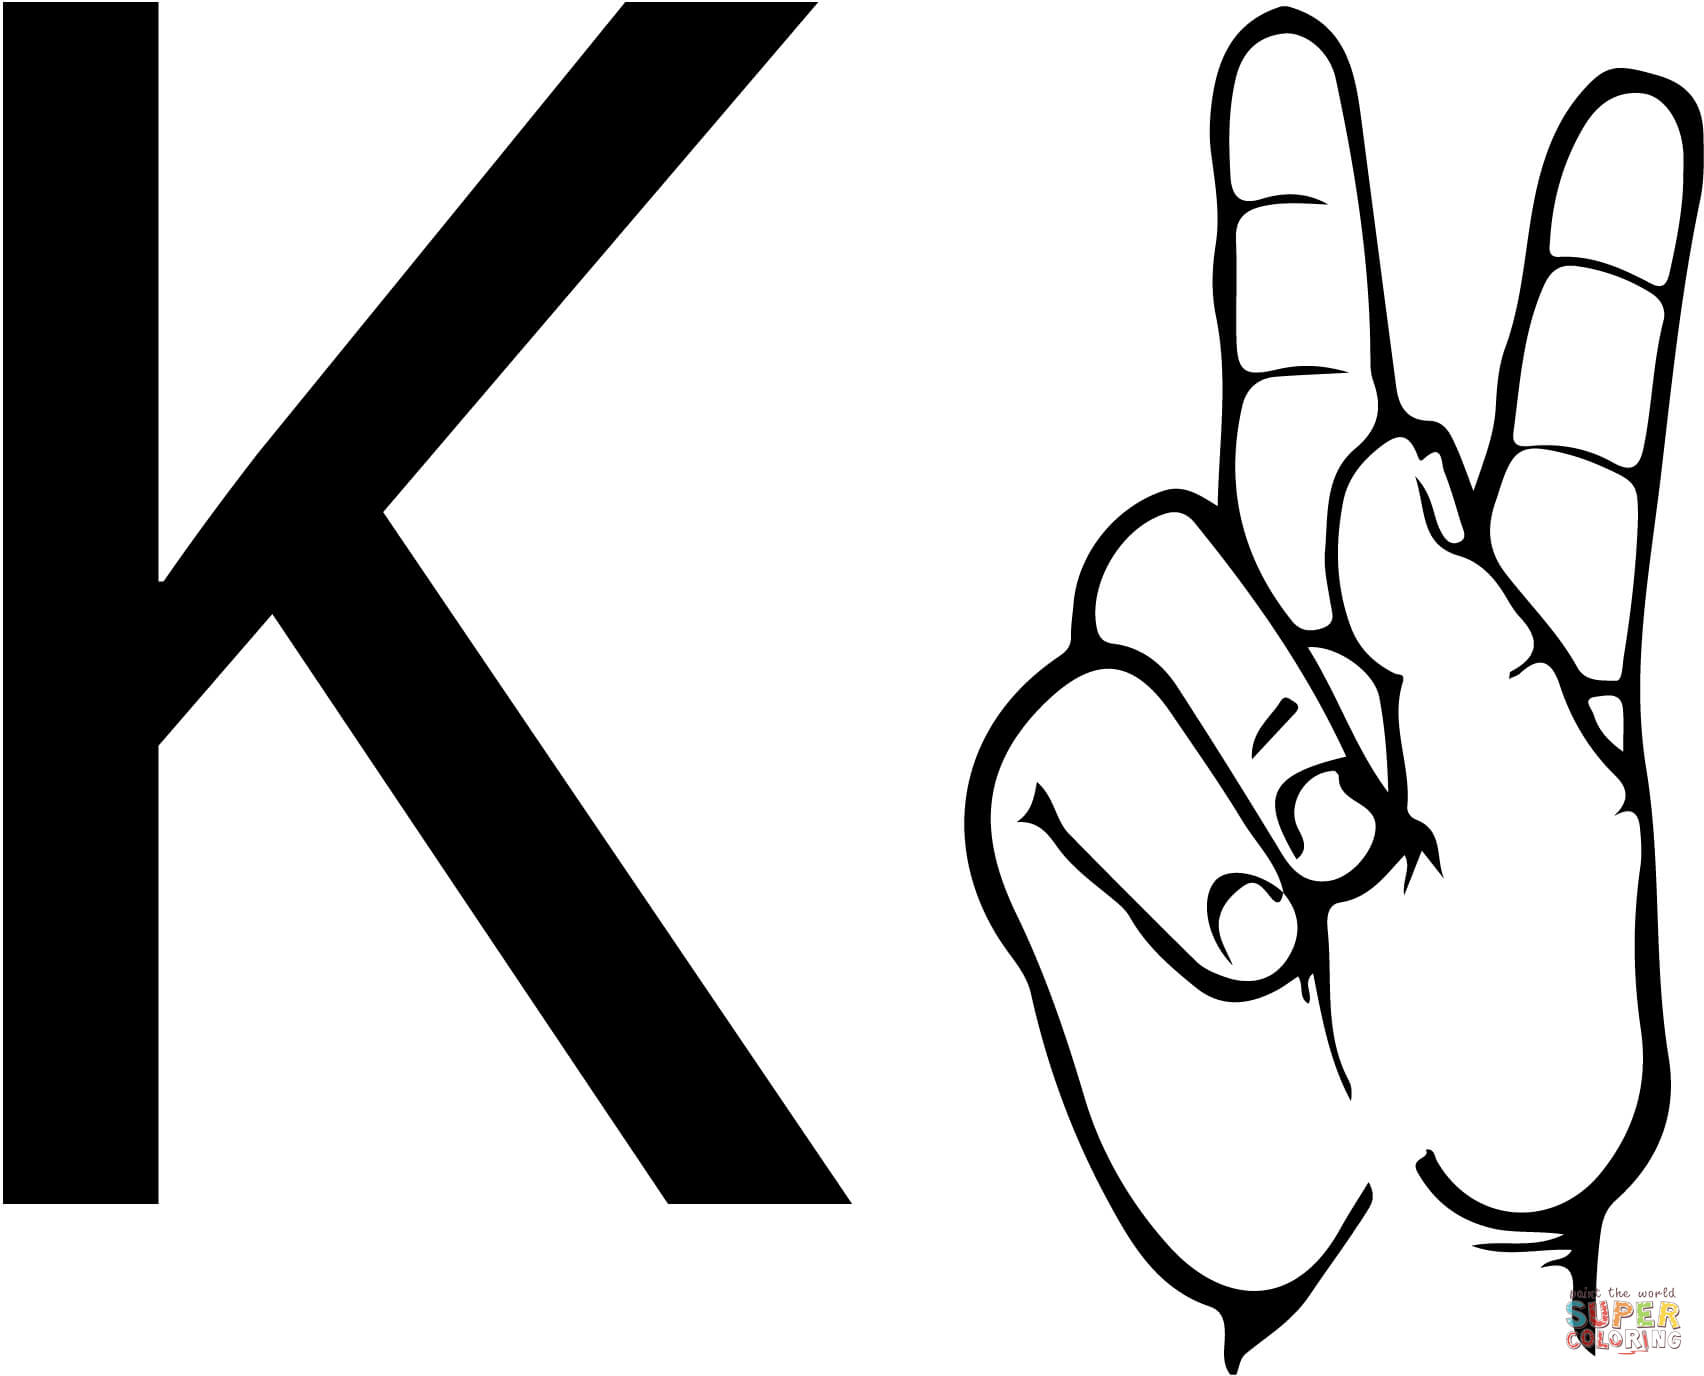 ASL Gebarentaal Letter K vanaf Letter K